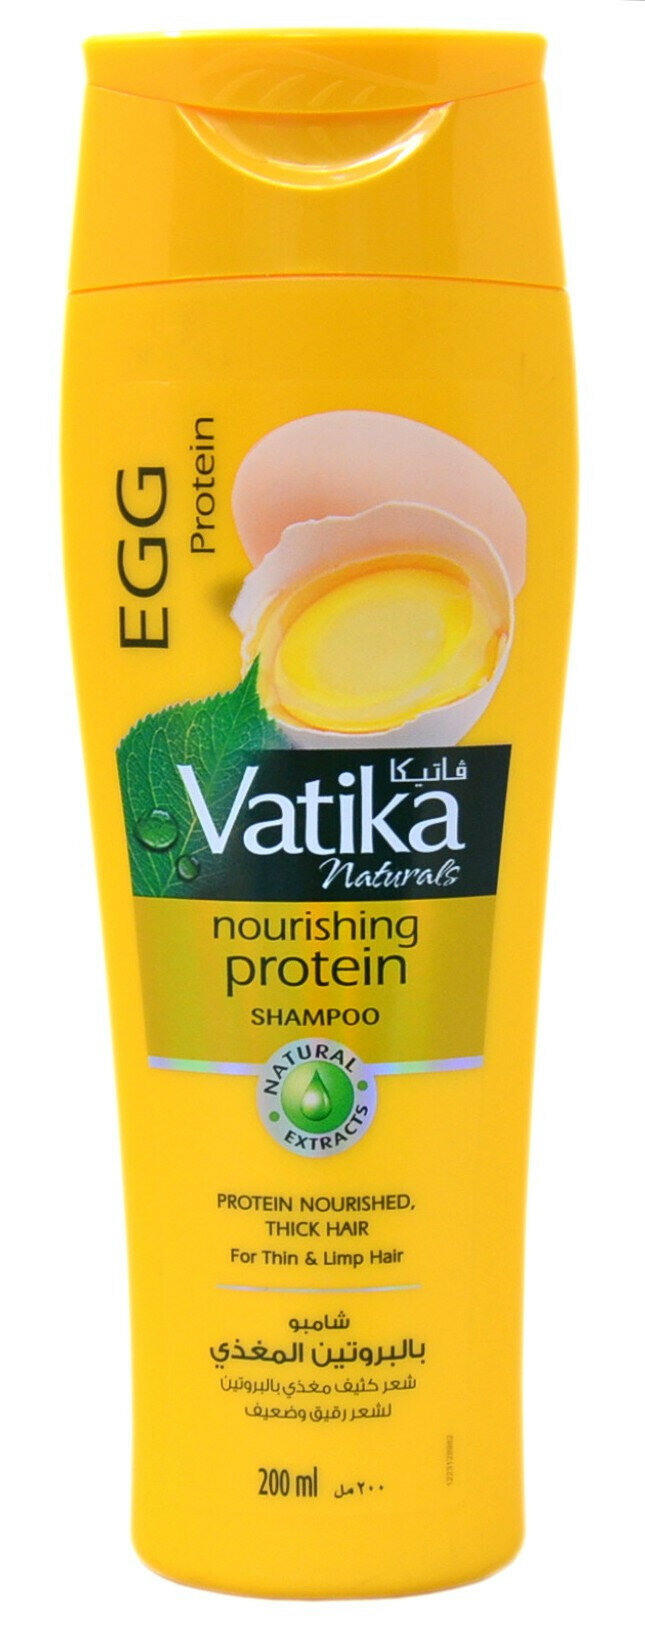 Шампунь - "Vatika - Nourishing protein Питательный белок" 200 мл (для тонких и ослабленных волос) U.A.E